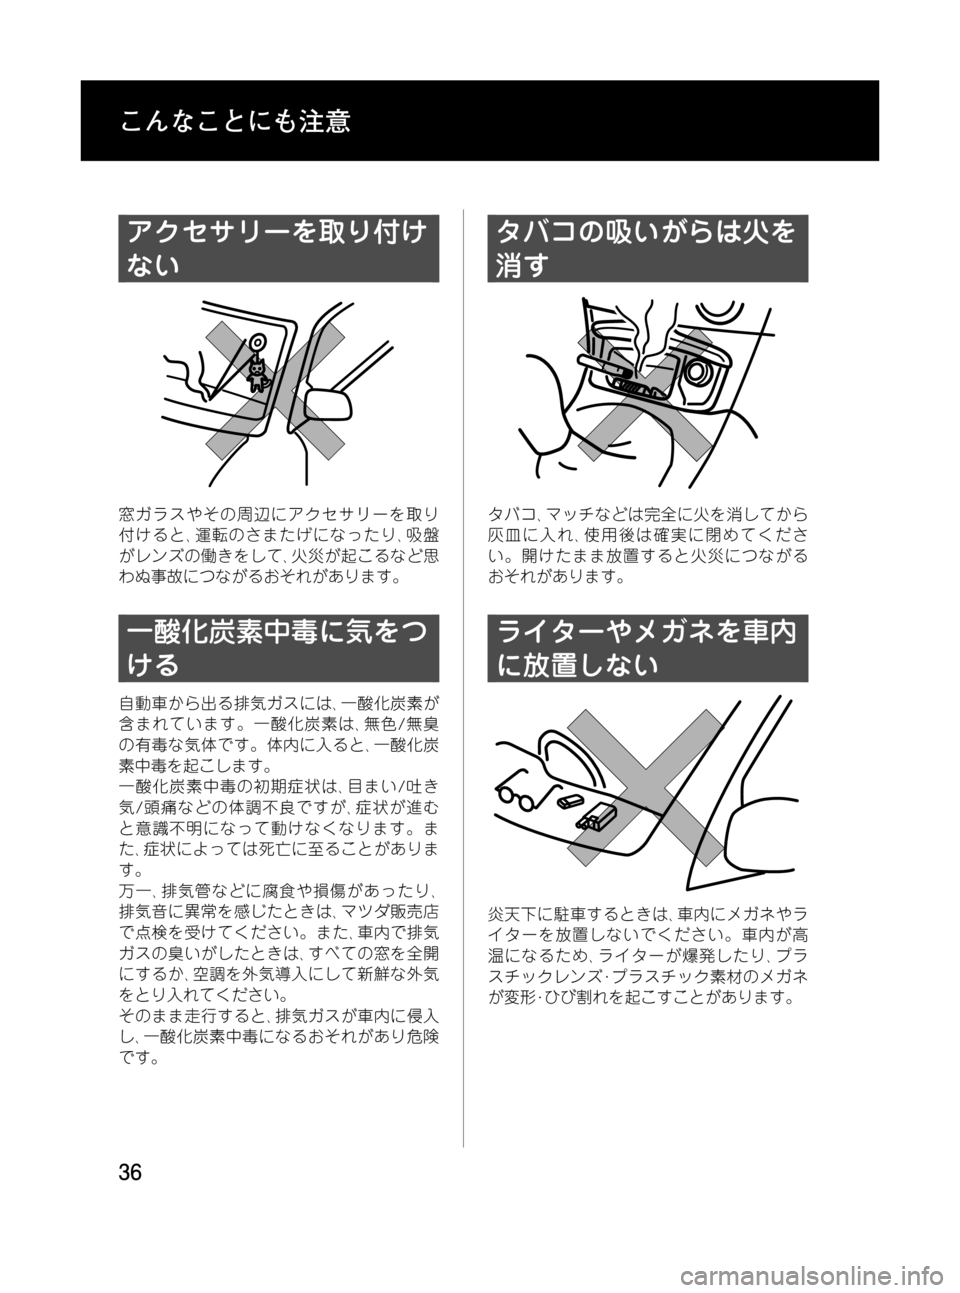 MAZDA MODEL RX 8 2008  取扱説明書 (in Japanese) Black plate (36,1)
アクセサリーを取り付け
ない
窓ガラスやその周辺にアクセサリーを取り
付けると､運転のさまたげになったり､吸盤
がレンズの働き